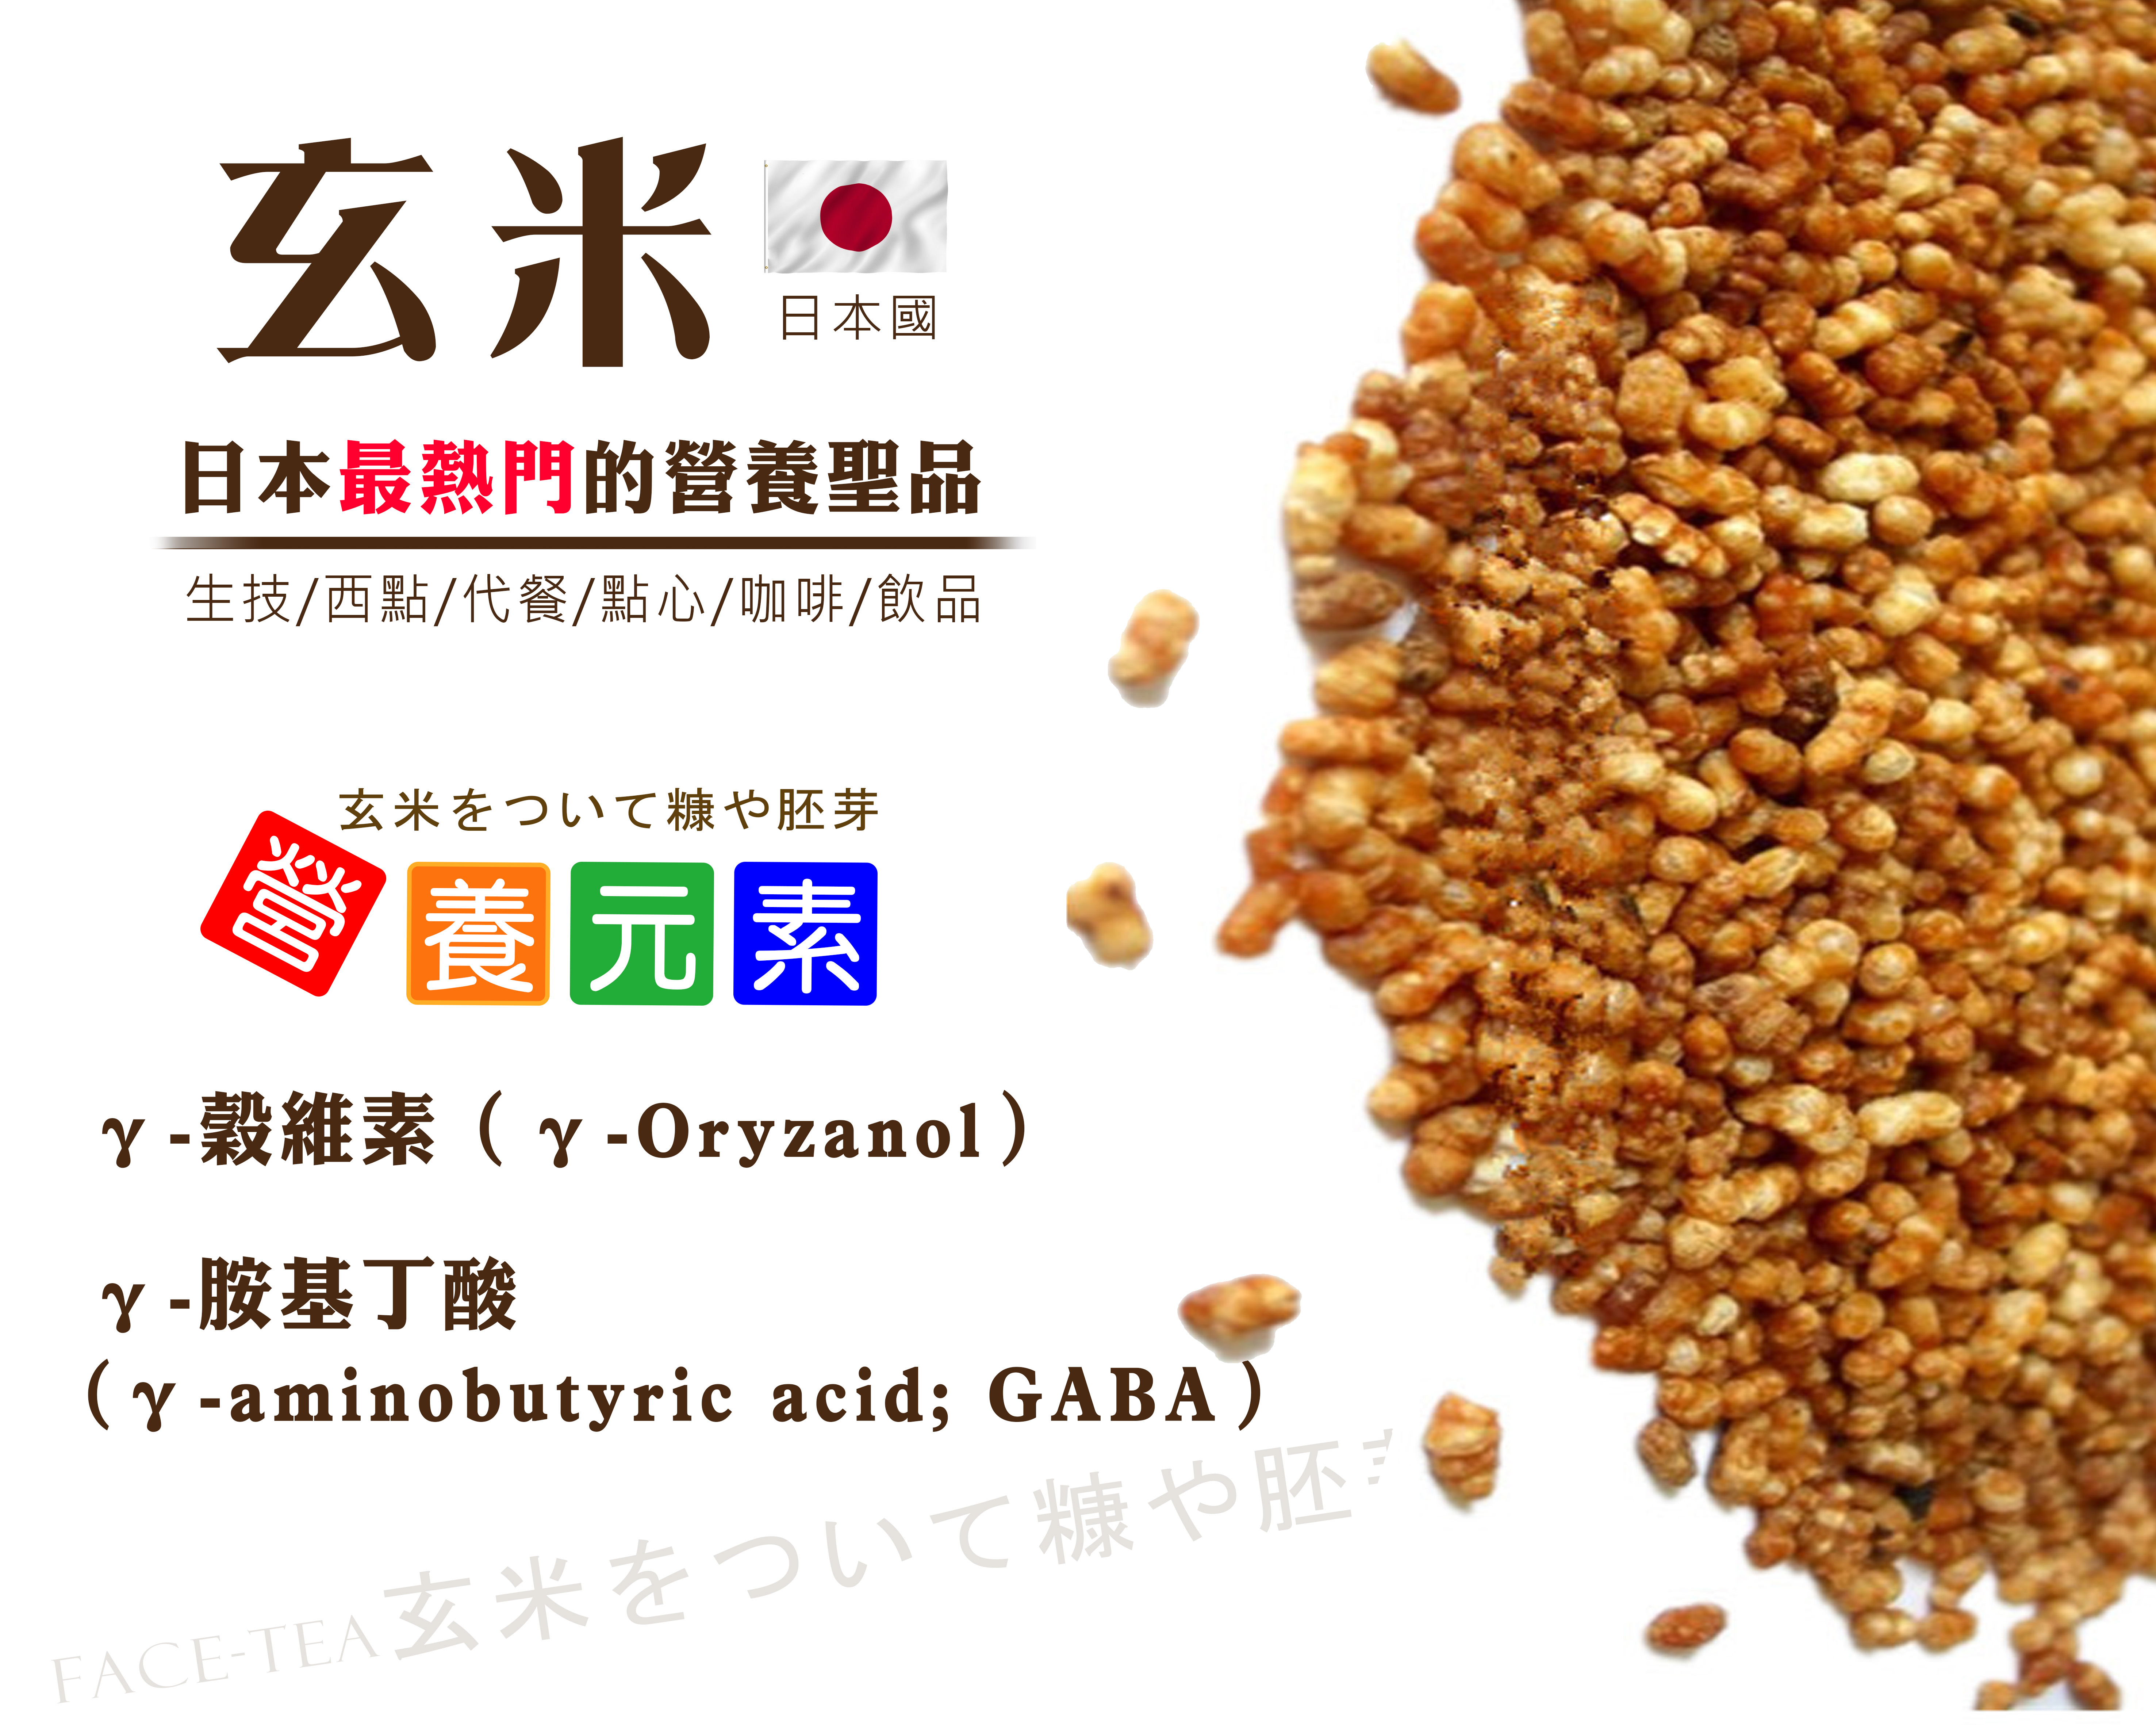 日本玄米粒 玄米をついて糠や胚芽 Facetea Bio Leader天然生技保健品供應